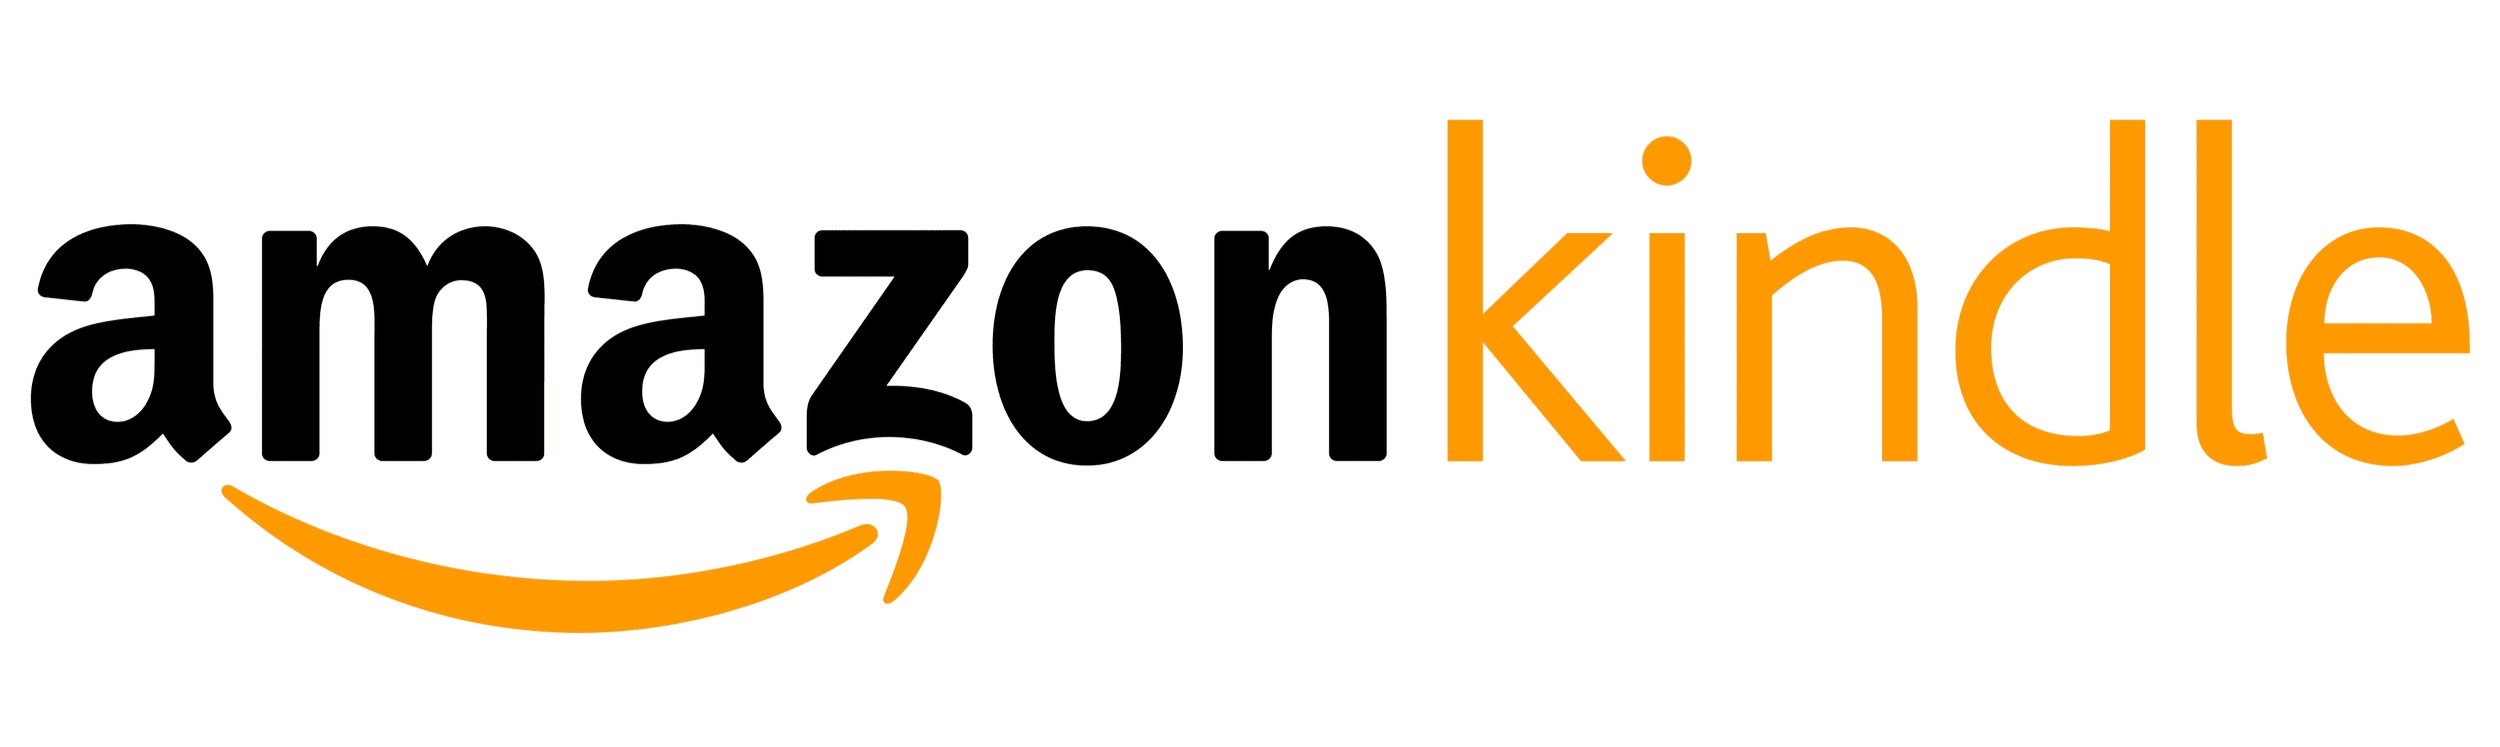 Amazon-Kindle-logo.jpg